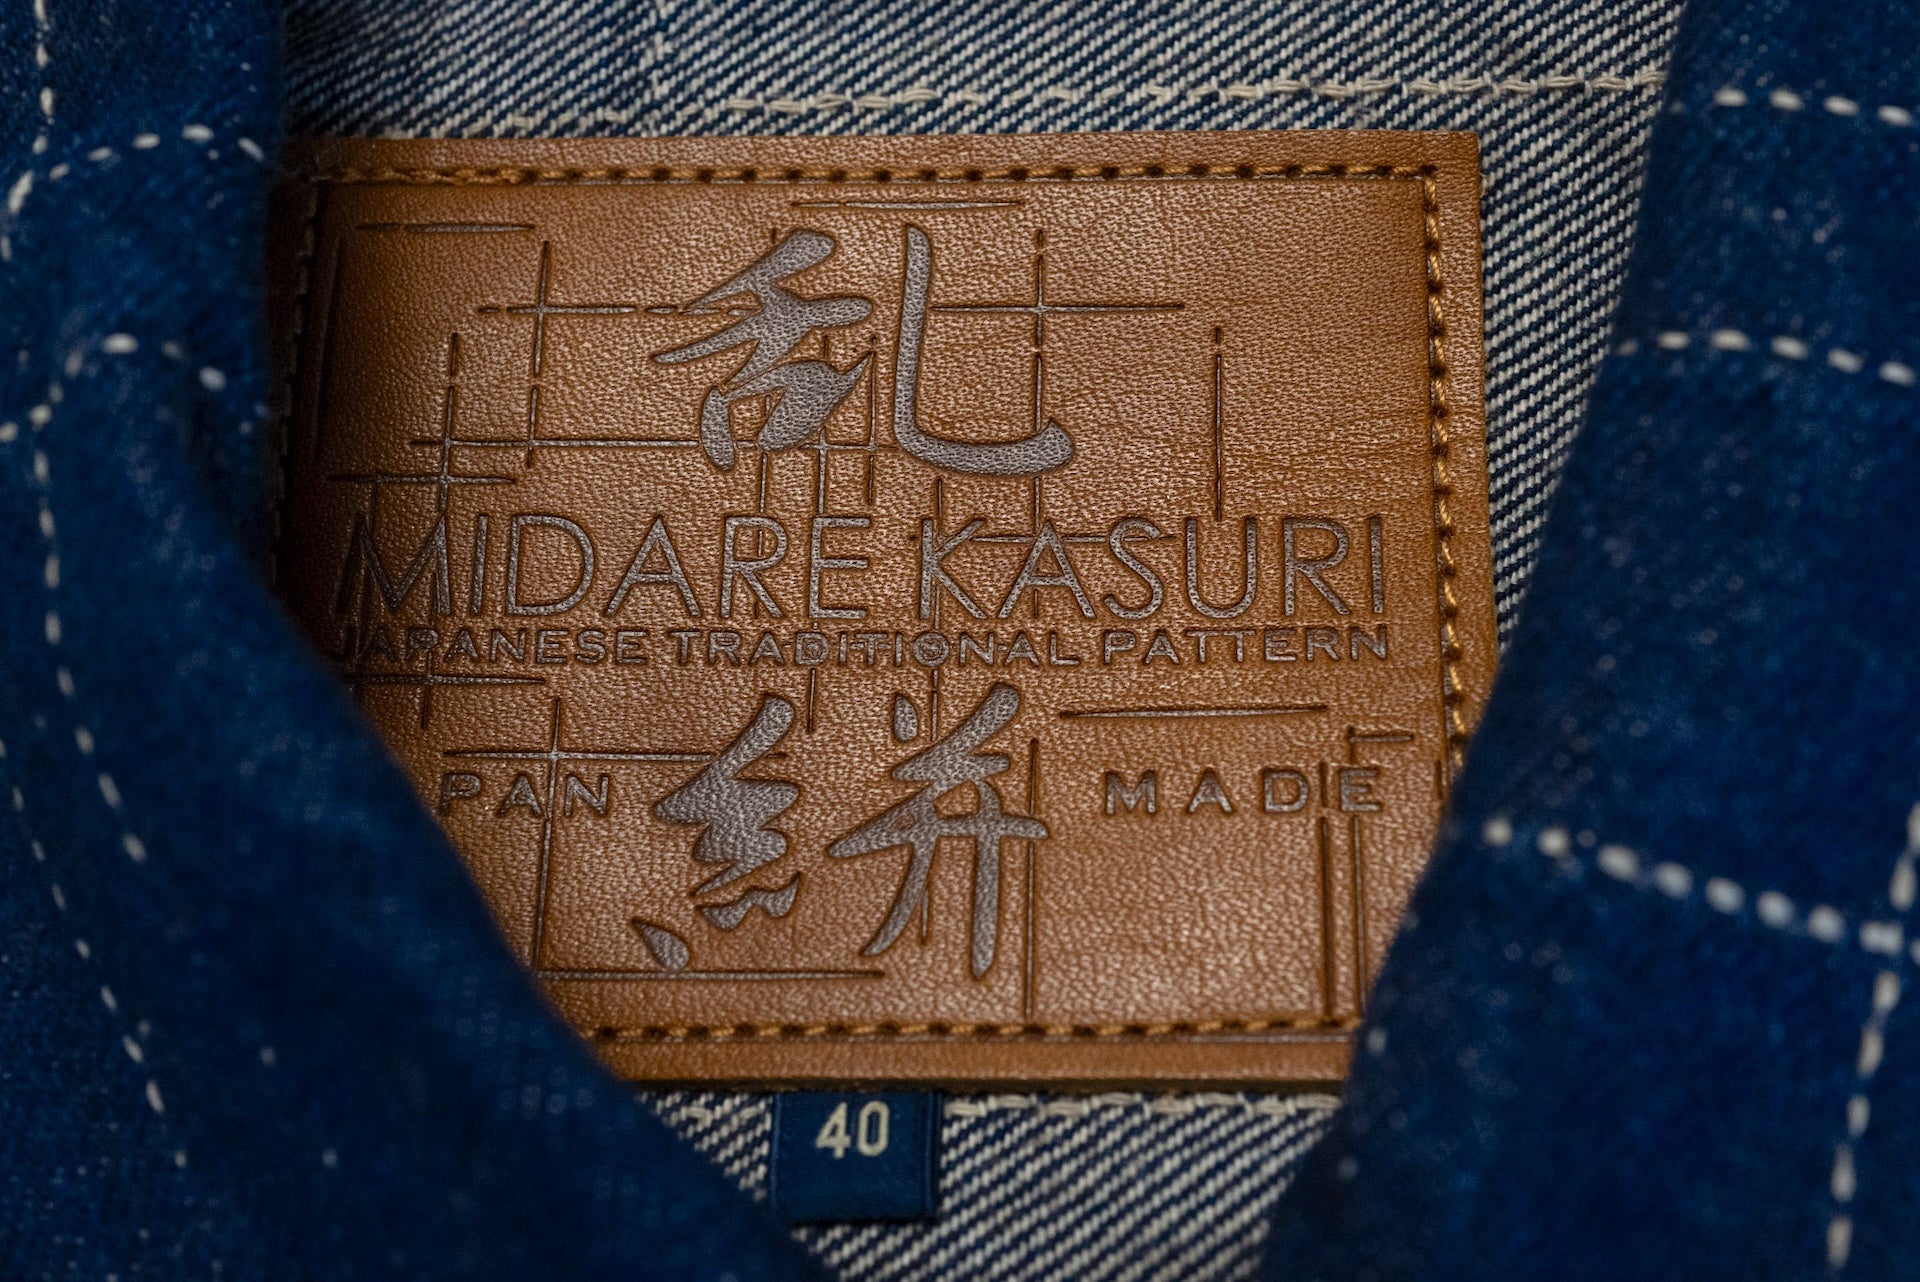 Studio D'Artisan 14oz "Midare" Kasuri Indigo Type 2 Denim Jacket